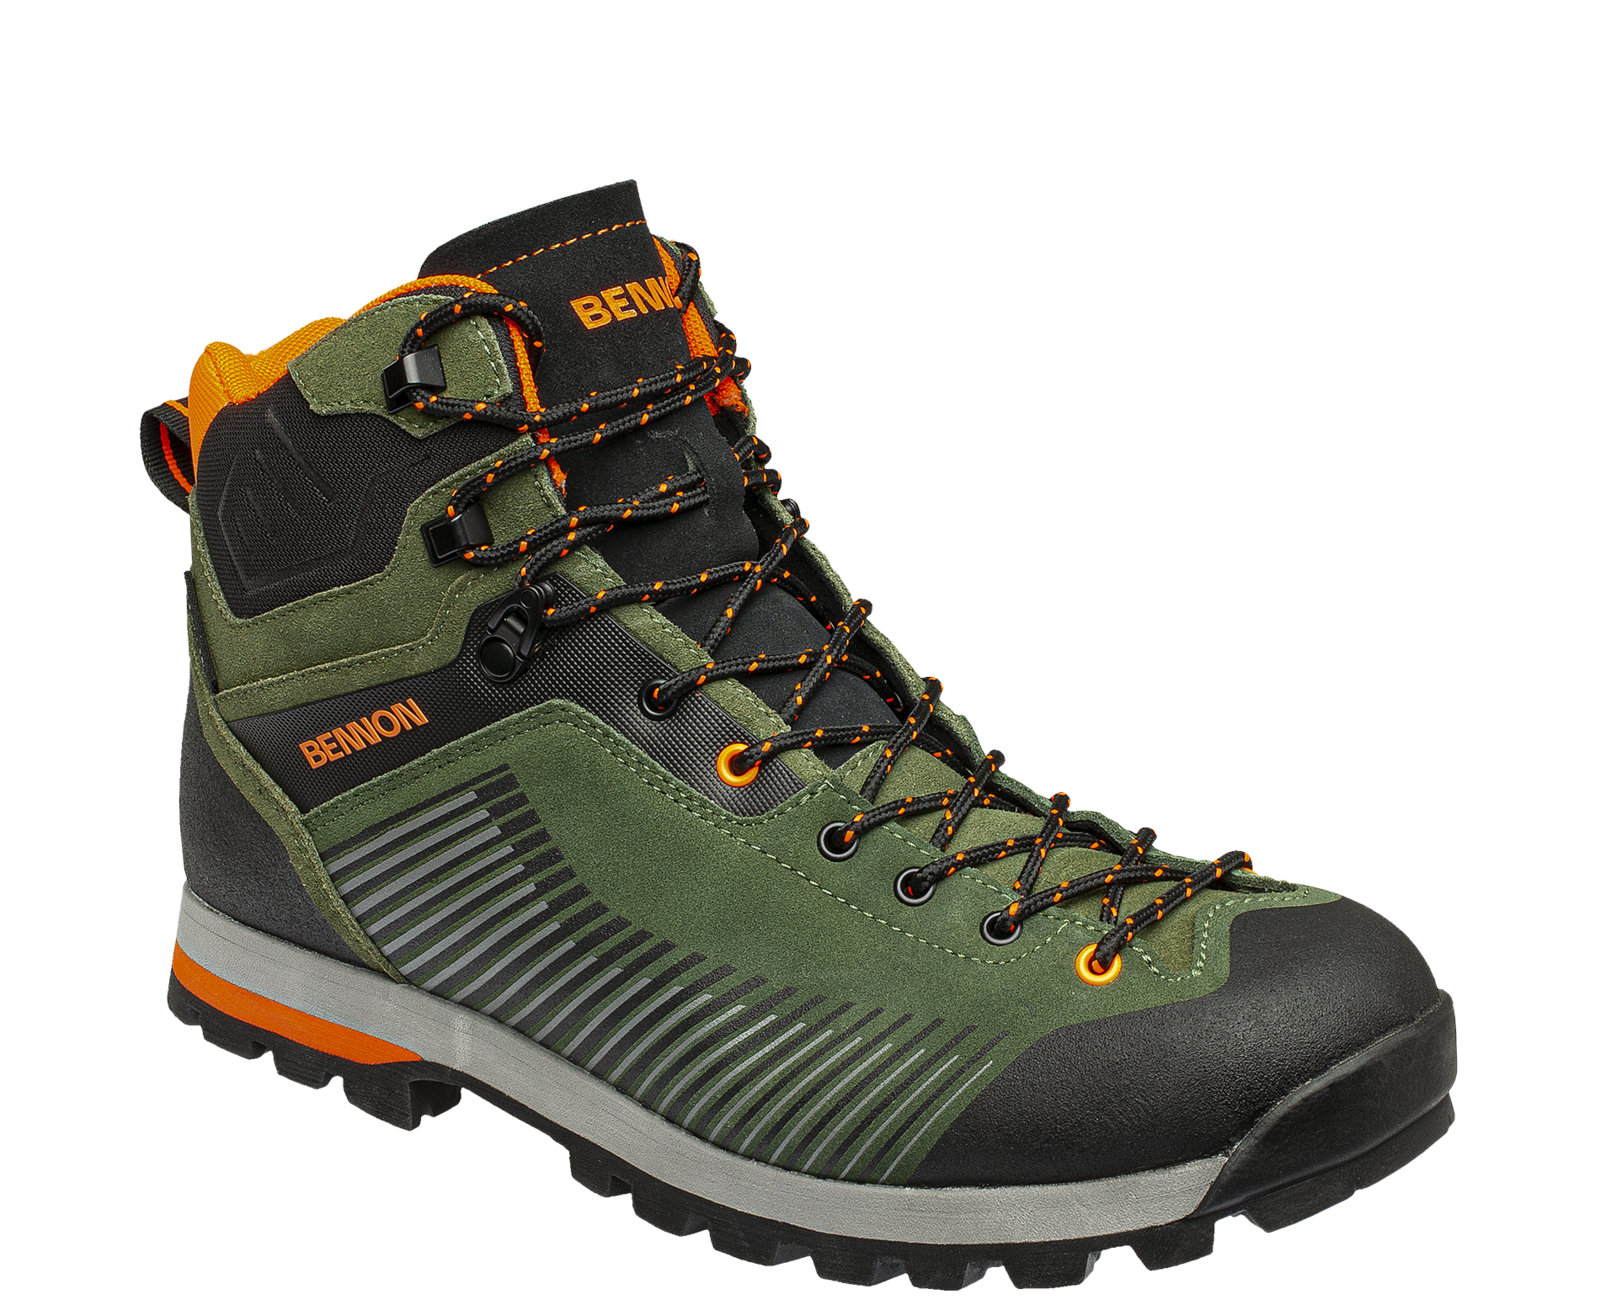 Kožená členková obuv s membránou Bennon Peak Green High - veľkosť: 46, farba: khaki/oranžová